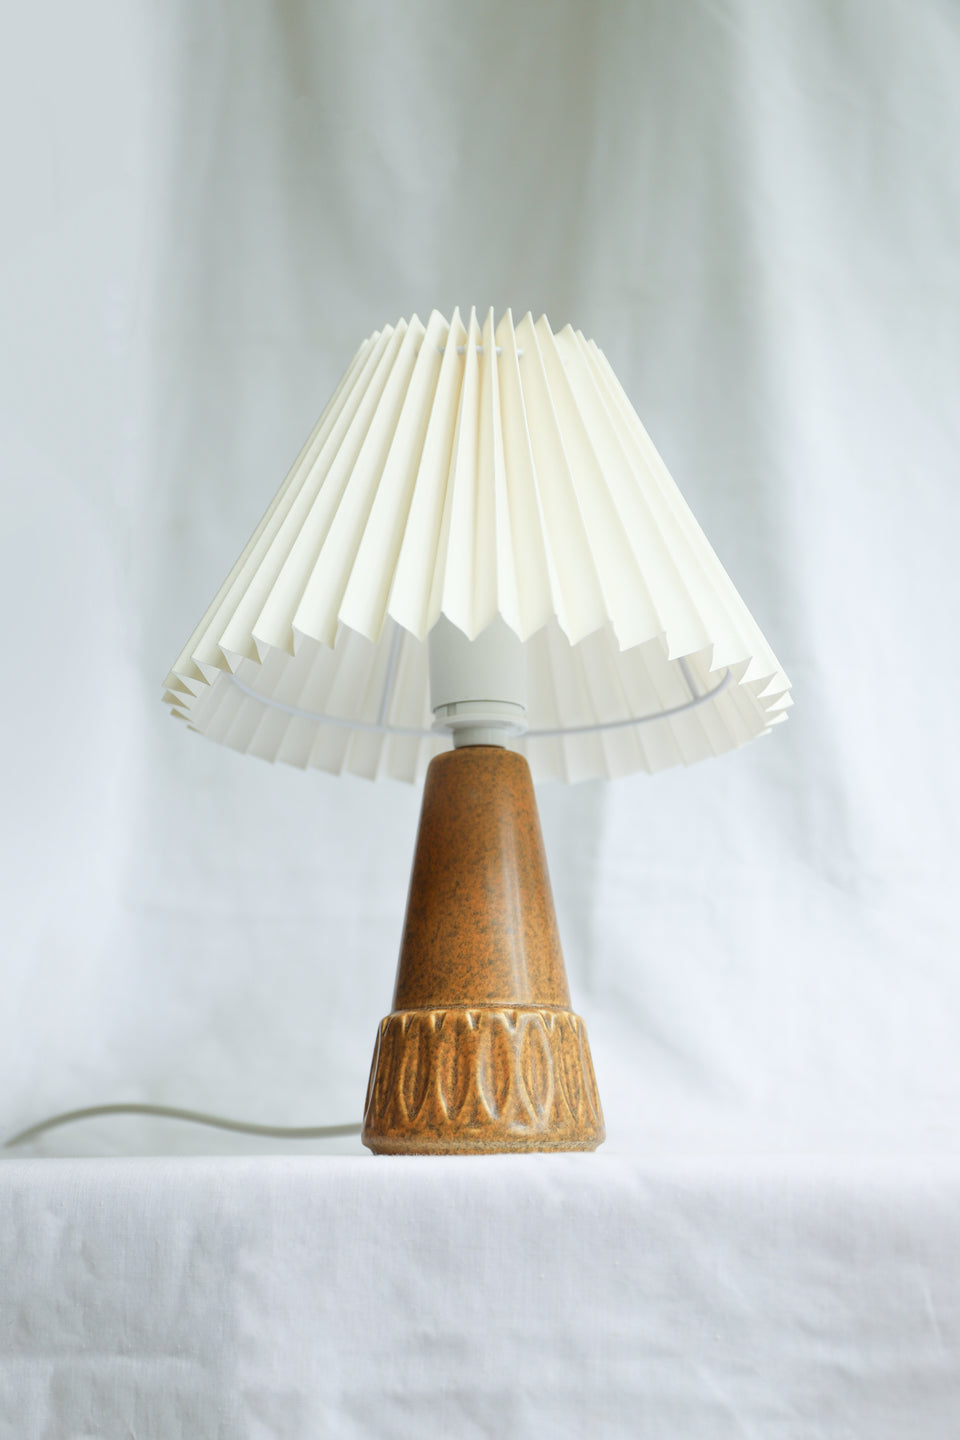 Danish Vintage Søholm Small Table Lamp/スーホルム テーブルランプ デンマークヴィンテージ 間接照明 北欧インテリア